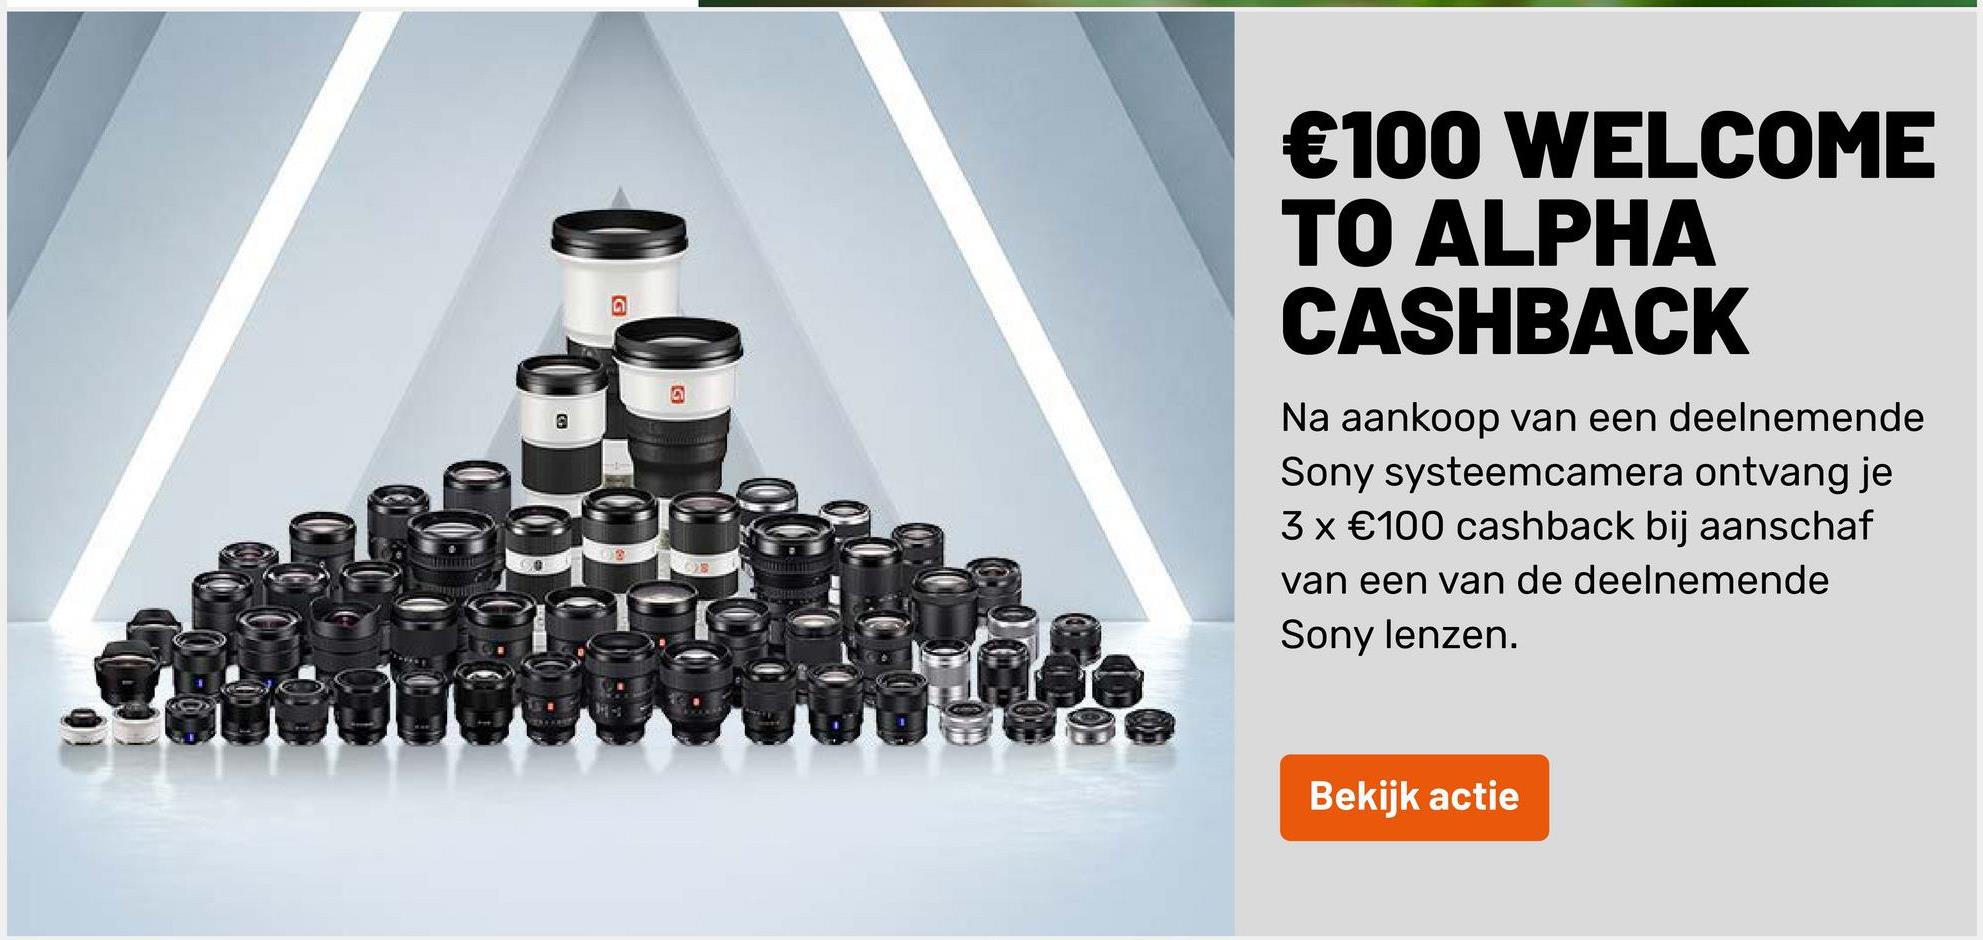 €100 WELCOME
TO ALPHA
CASHBACK
@
Na aankoop van een deelnemende
Sony systeemcamera ontvang je
3x €100 cashback bij aanschaf
van een van de deelnemende
Sony lenzen.
OS
Bekijk actie
